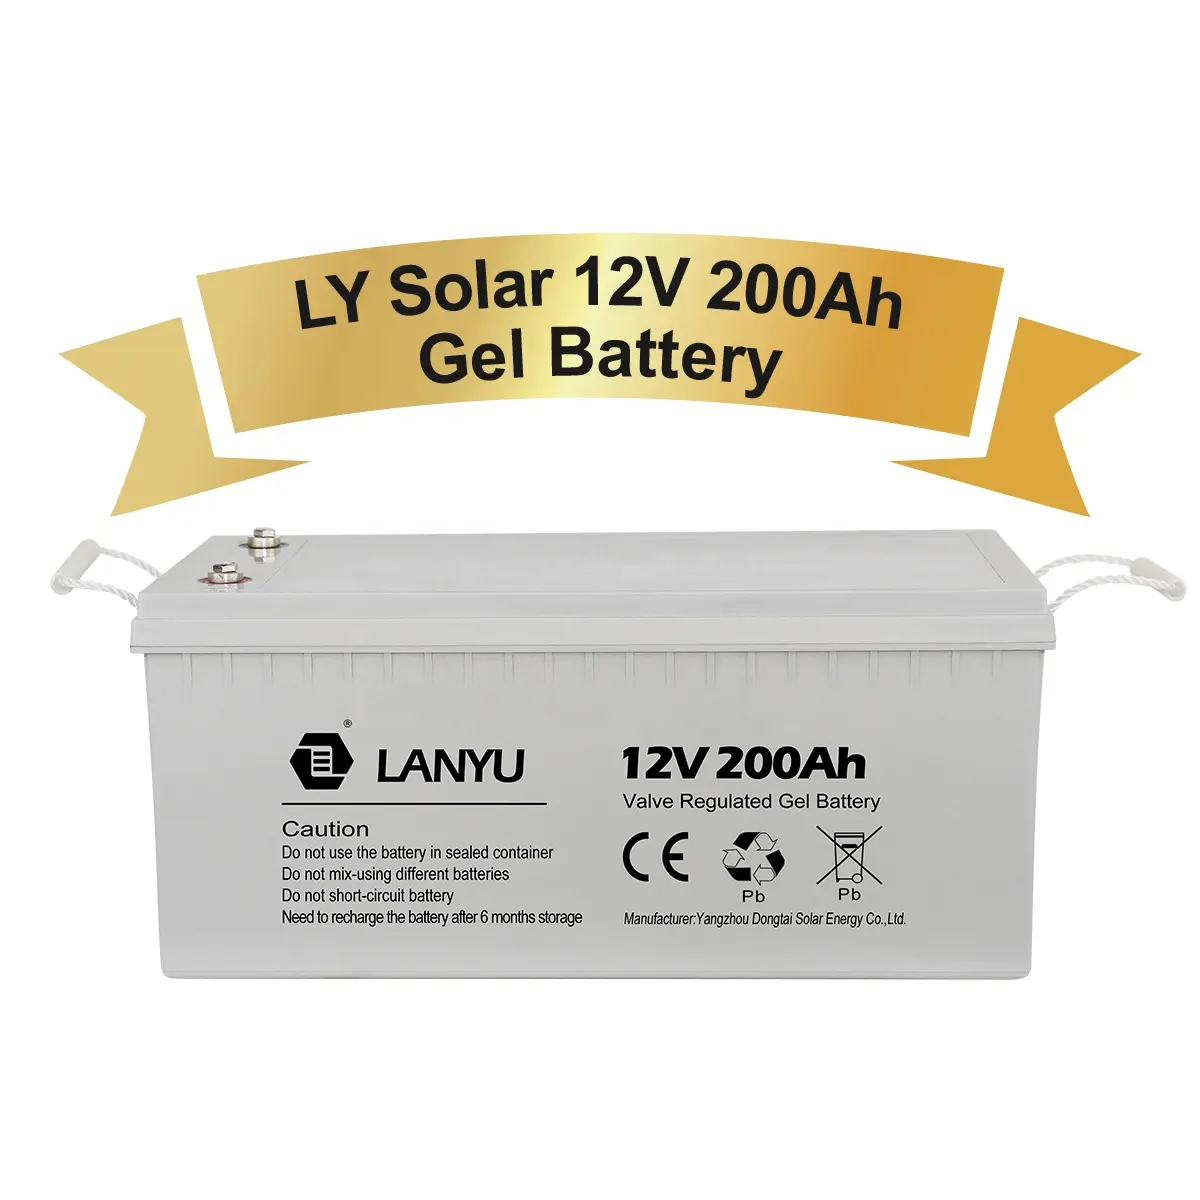 Gel-Batterie Agm Blei-Säure-Gel-Batterien 200ah Gel-Batterie 12V 300ah für netz unabhängige Solarstrom anlagen